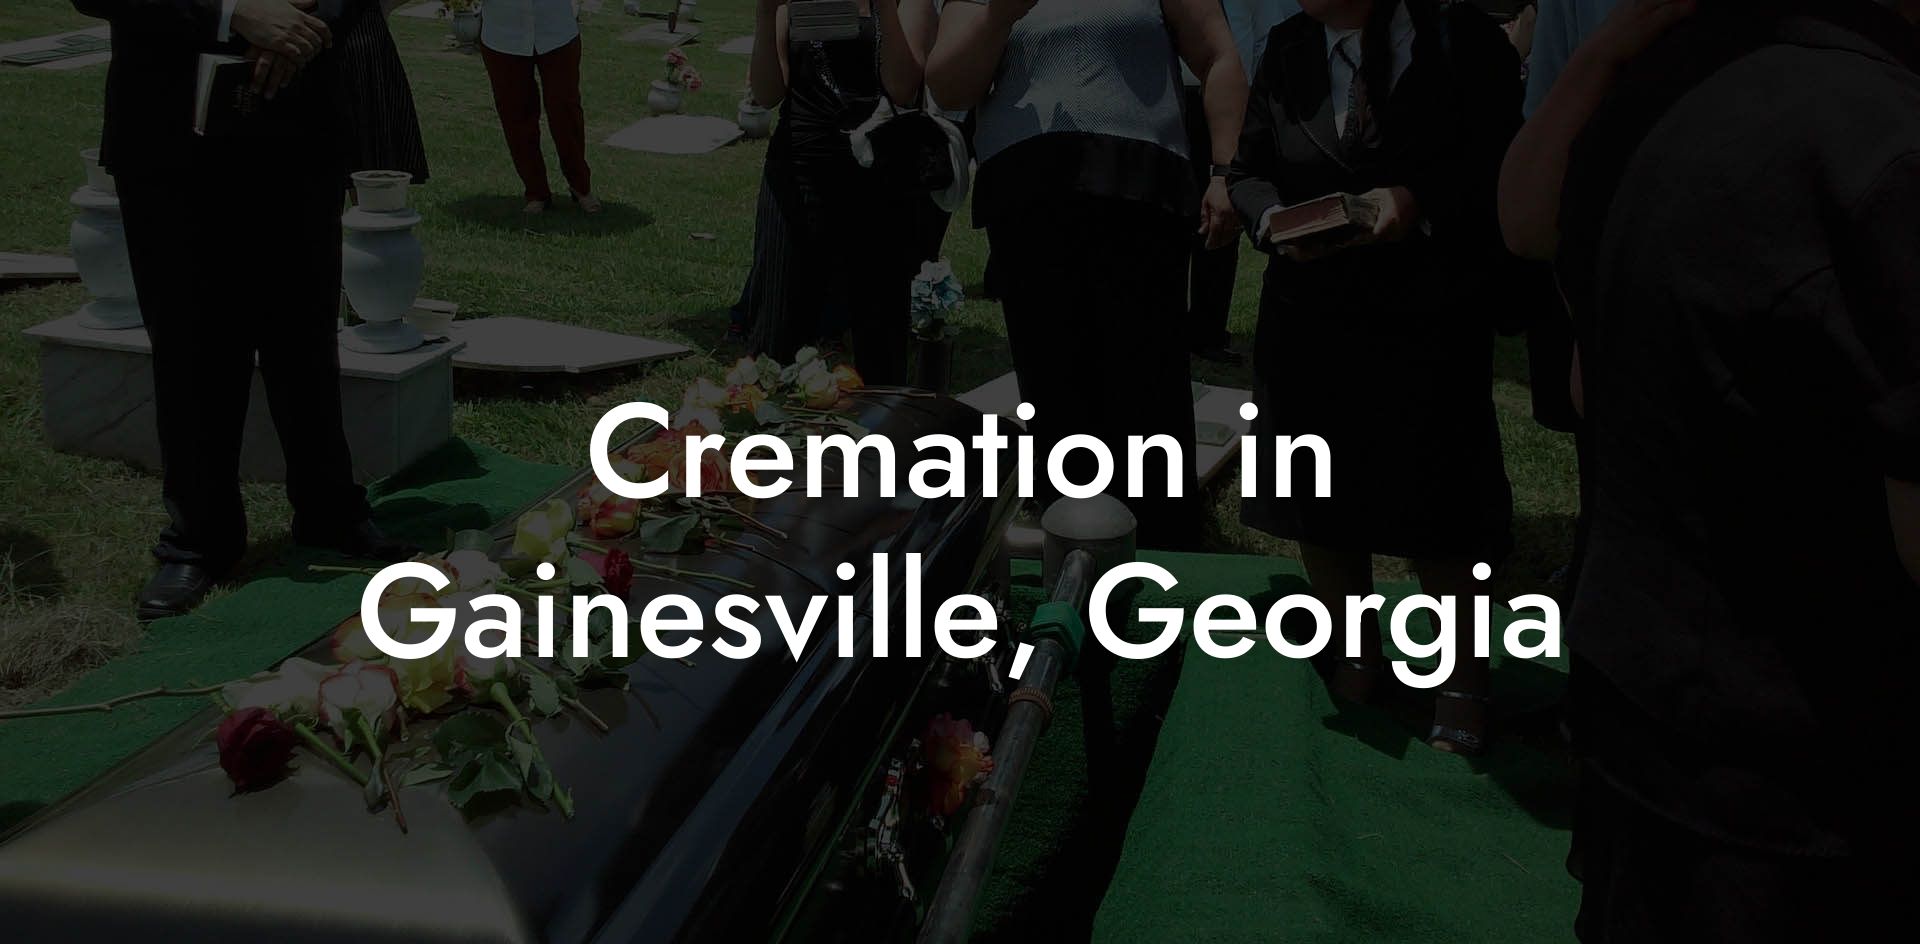 Cremation in Gainesville, Georgia